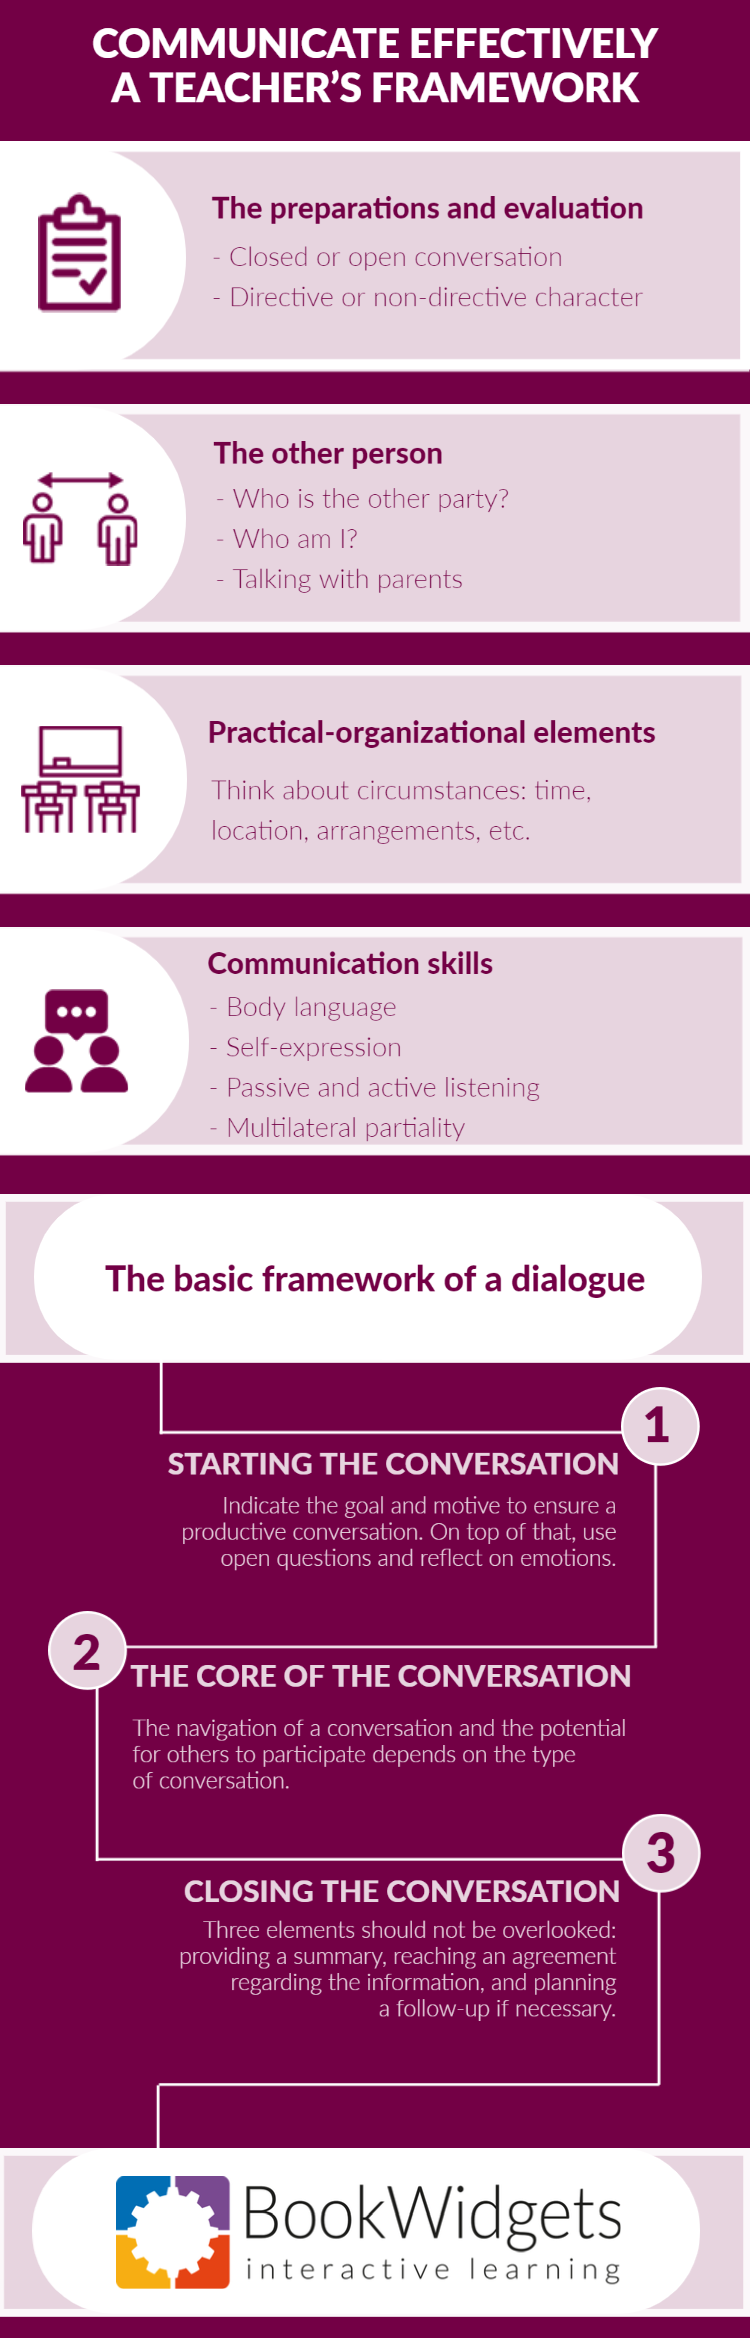 Communicate effectively - A teacher’s framework